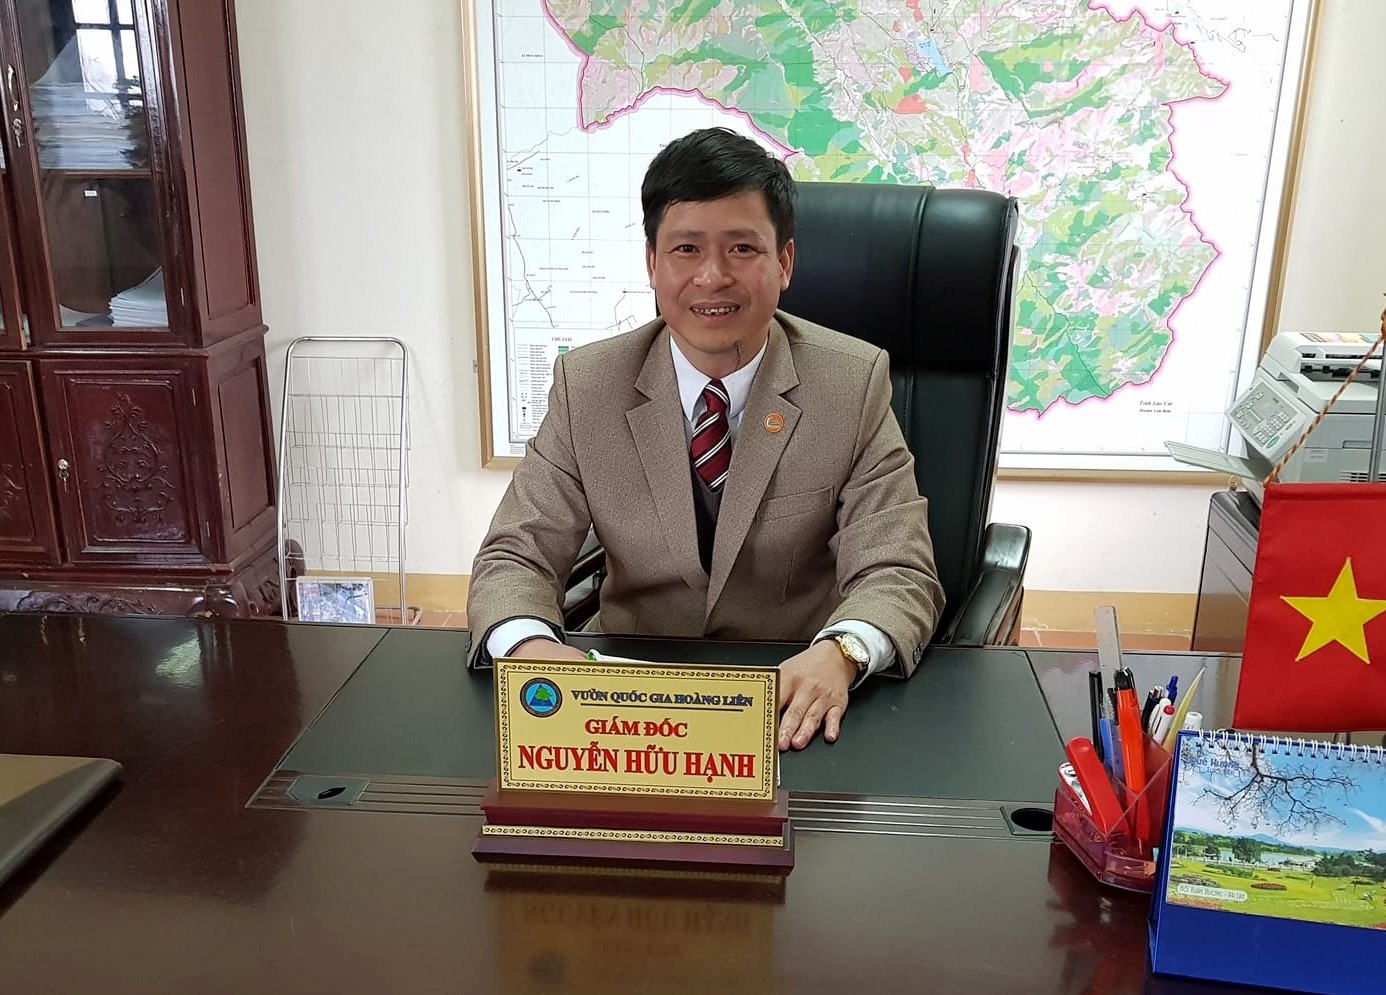 Ông Nguyễn Hữu Hạnh giám đốc VQG Hoàng Liên